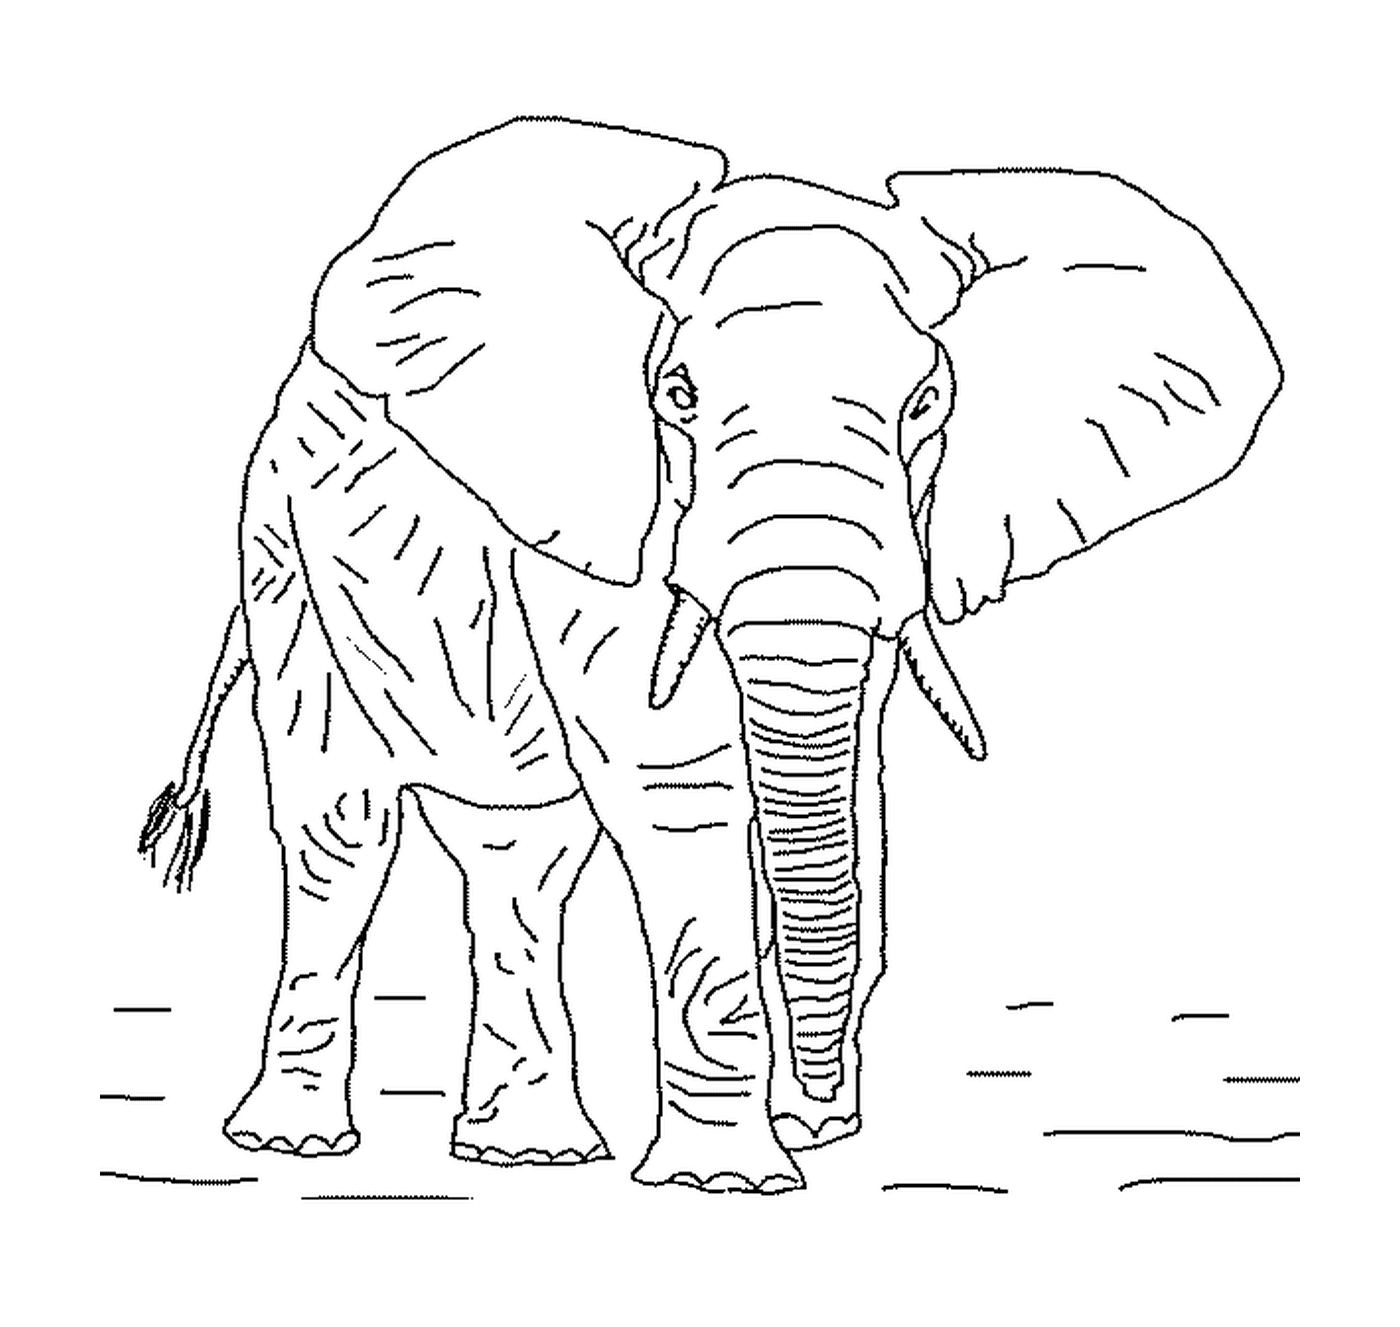  Un elefante grande con colmillos 